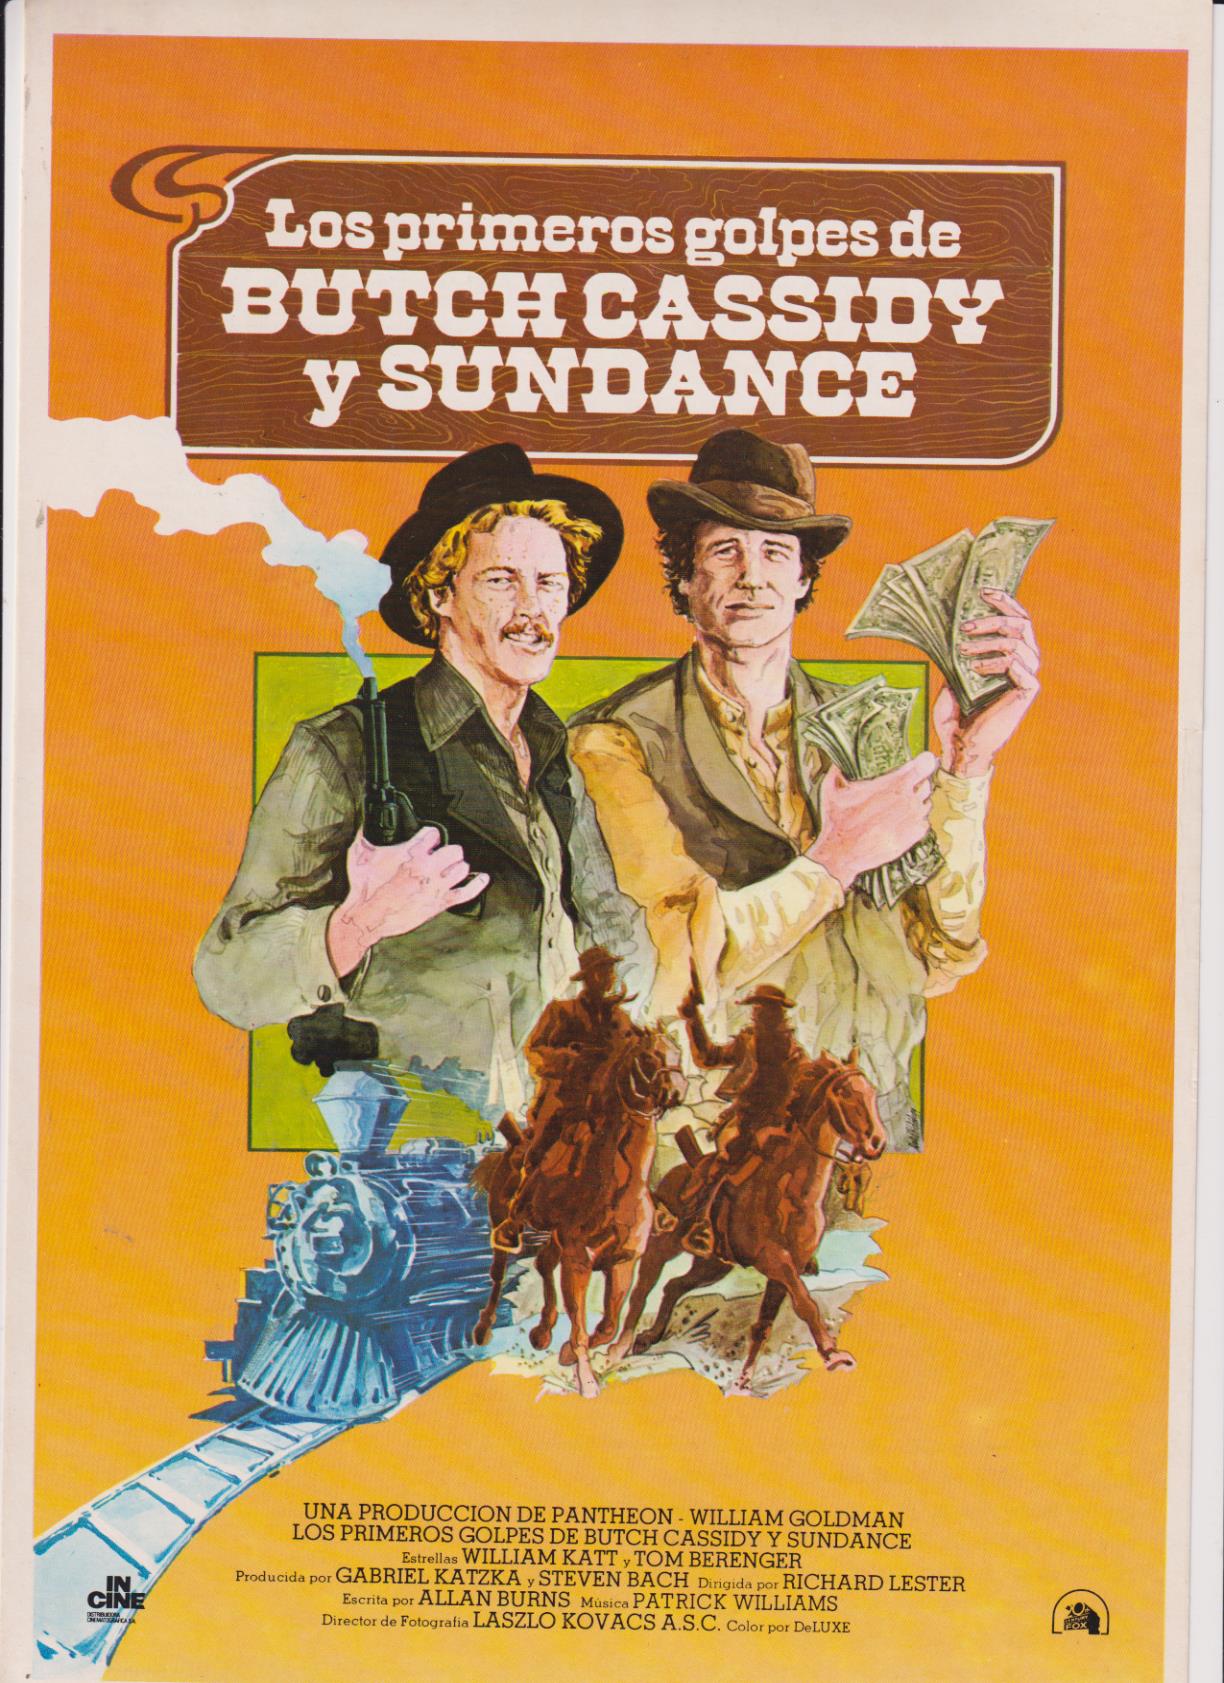 Los primeros golpes de Butch Cassidy y Sundance. Guía sencilla